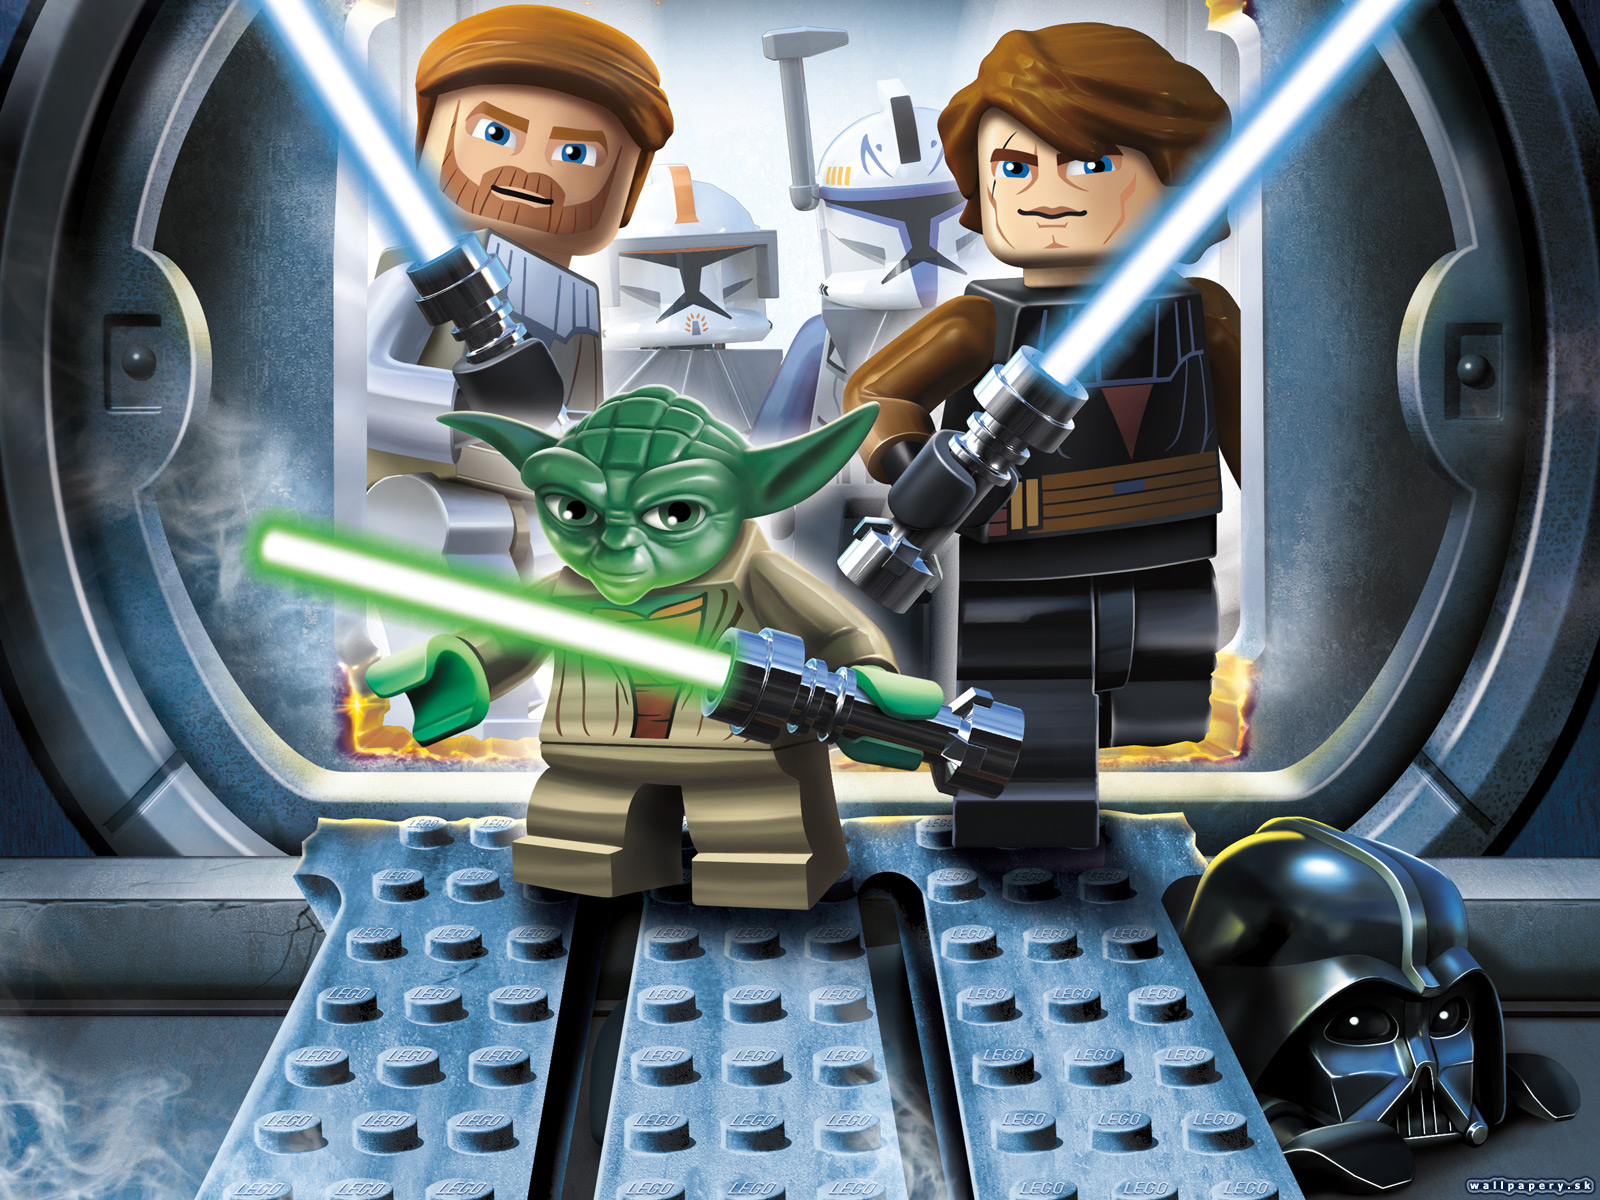 Lego star wars 3 the clone wars русификатор для steam фото 82